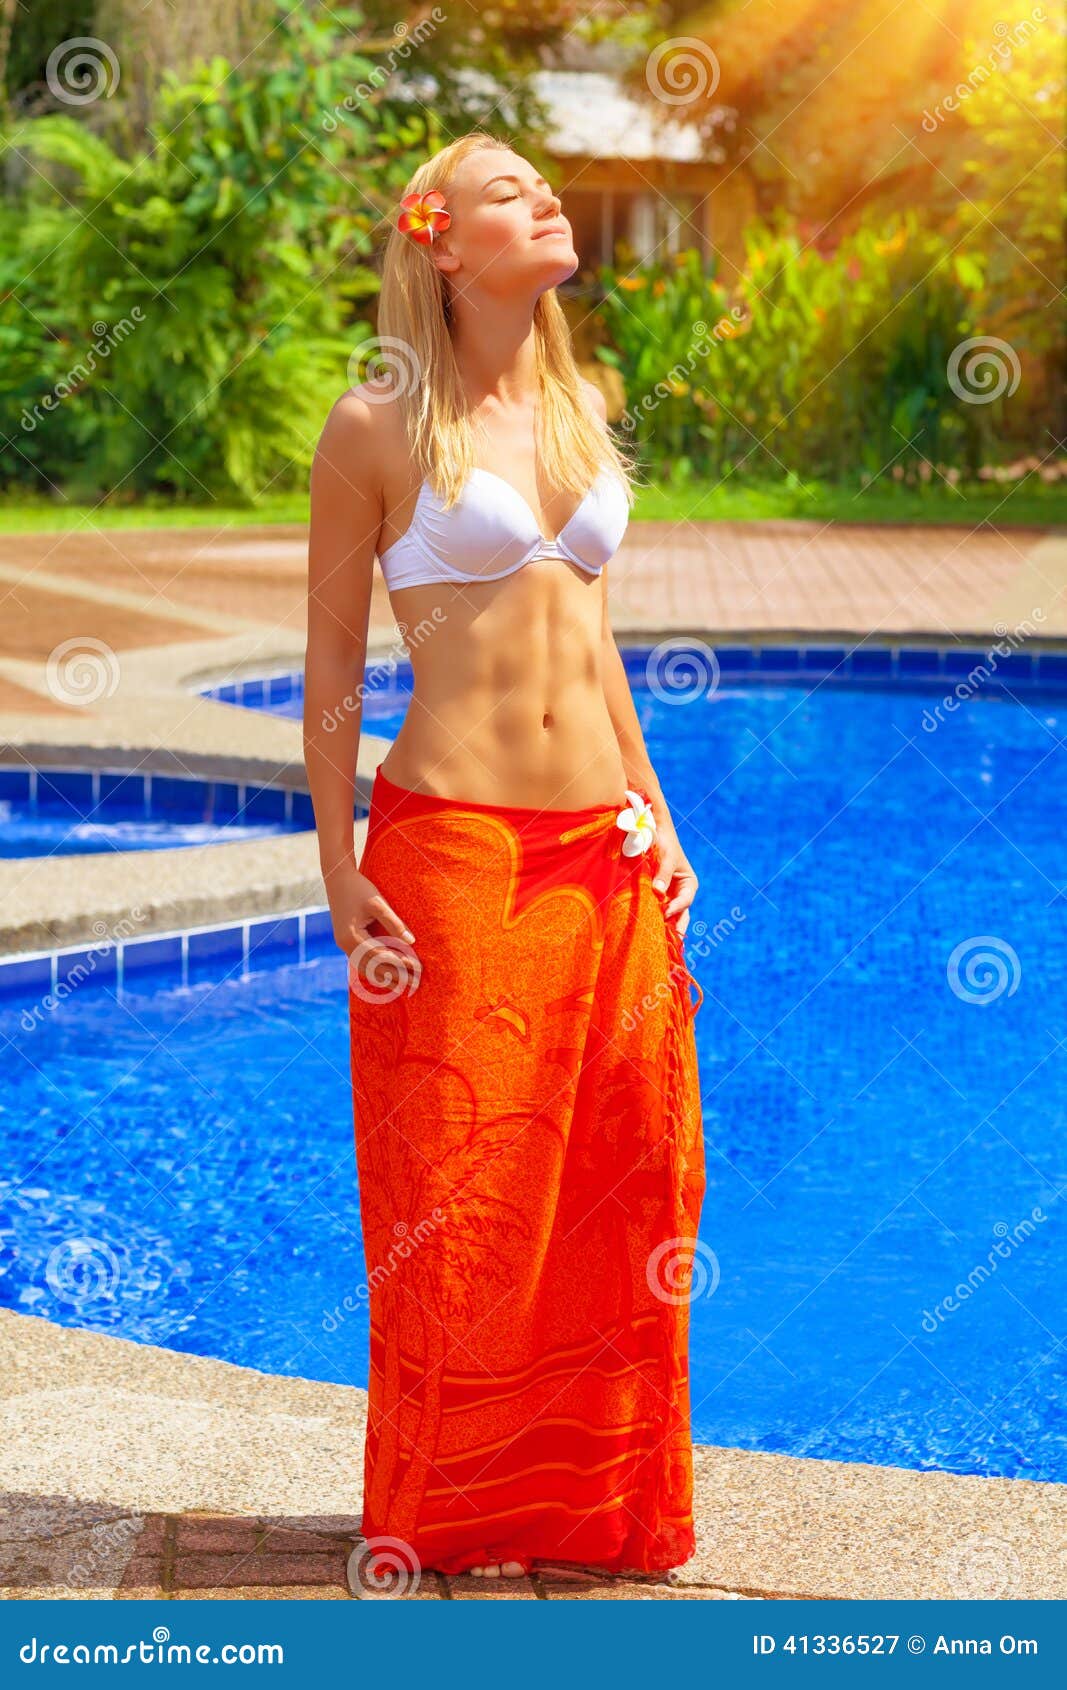 Female Enjoying Summer Holidays Stock Image Image Of Rica Luxury